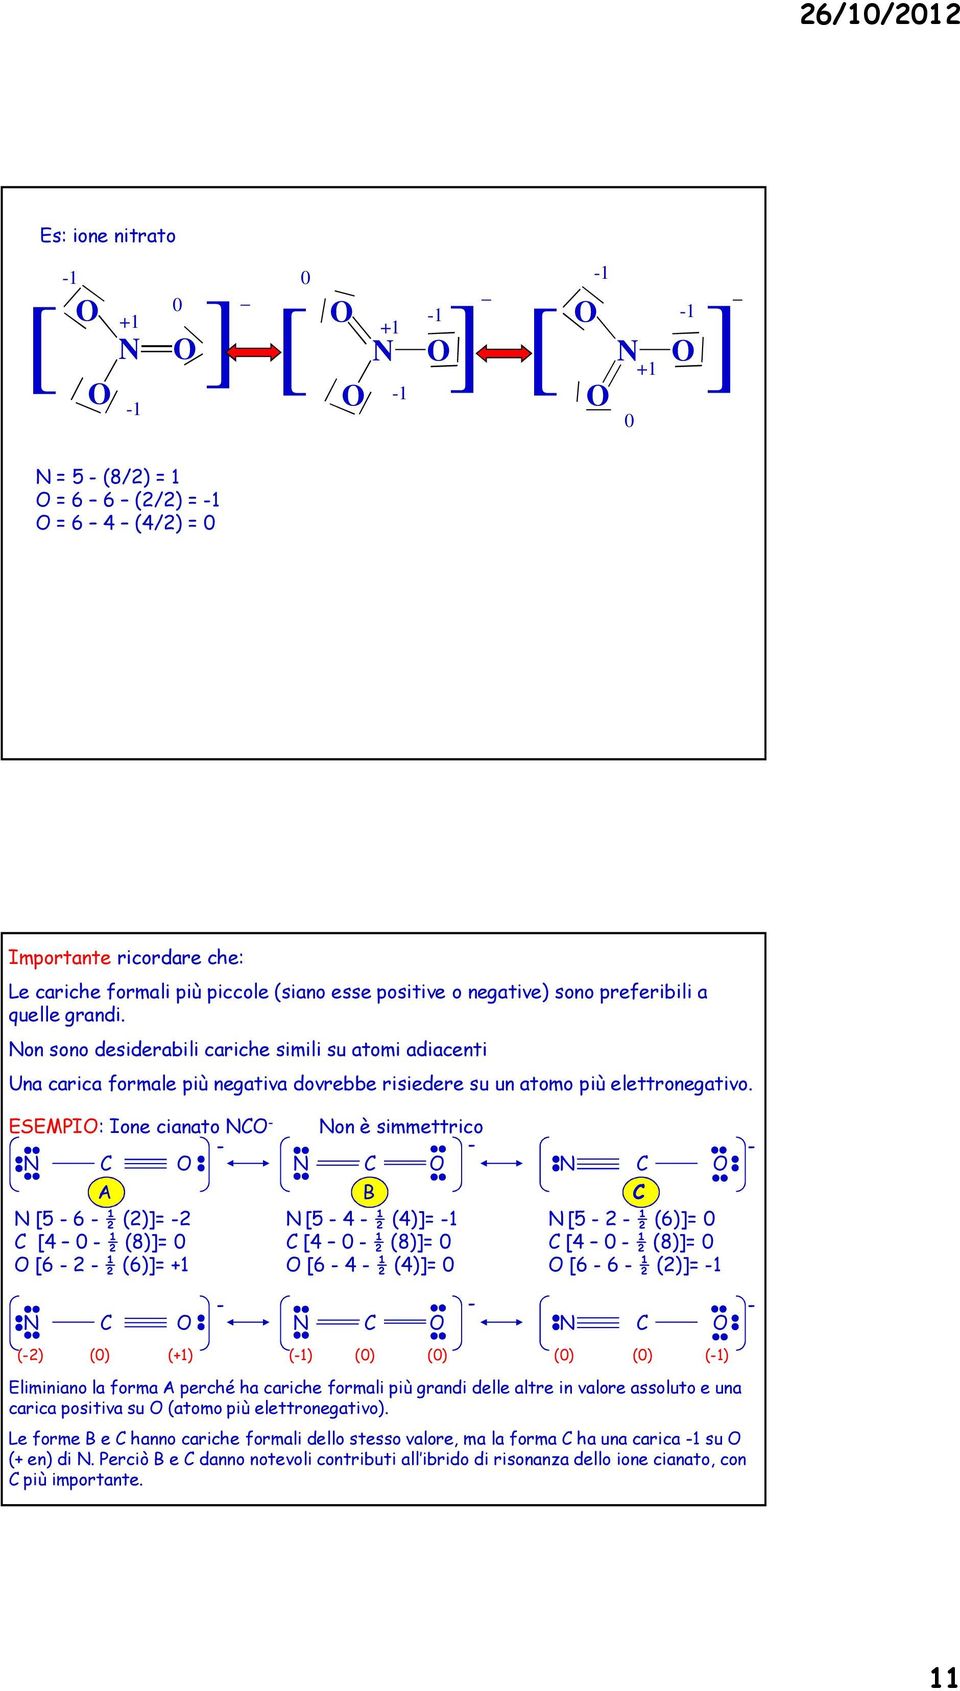 ESEMPI: Ione cinto on è simmettrico A B [5 4 ½ (4)]= 1 [4 0 ½ (8)]= 0 [6 4 ½ (4)]= 0 [5 6 ½ (2)]= 2 [4 0 ½ (8)]= 0 [6 2 ½ (6)]= +1 [5 2 ½ (6)]= 0 [4 0 ½ (8)]= 0 [6 6 ½ (2)]= 1 (2) (0) (+1) (1) (0)